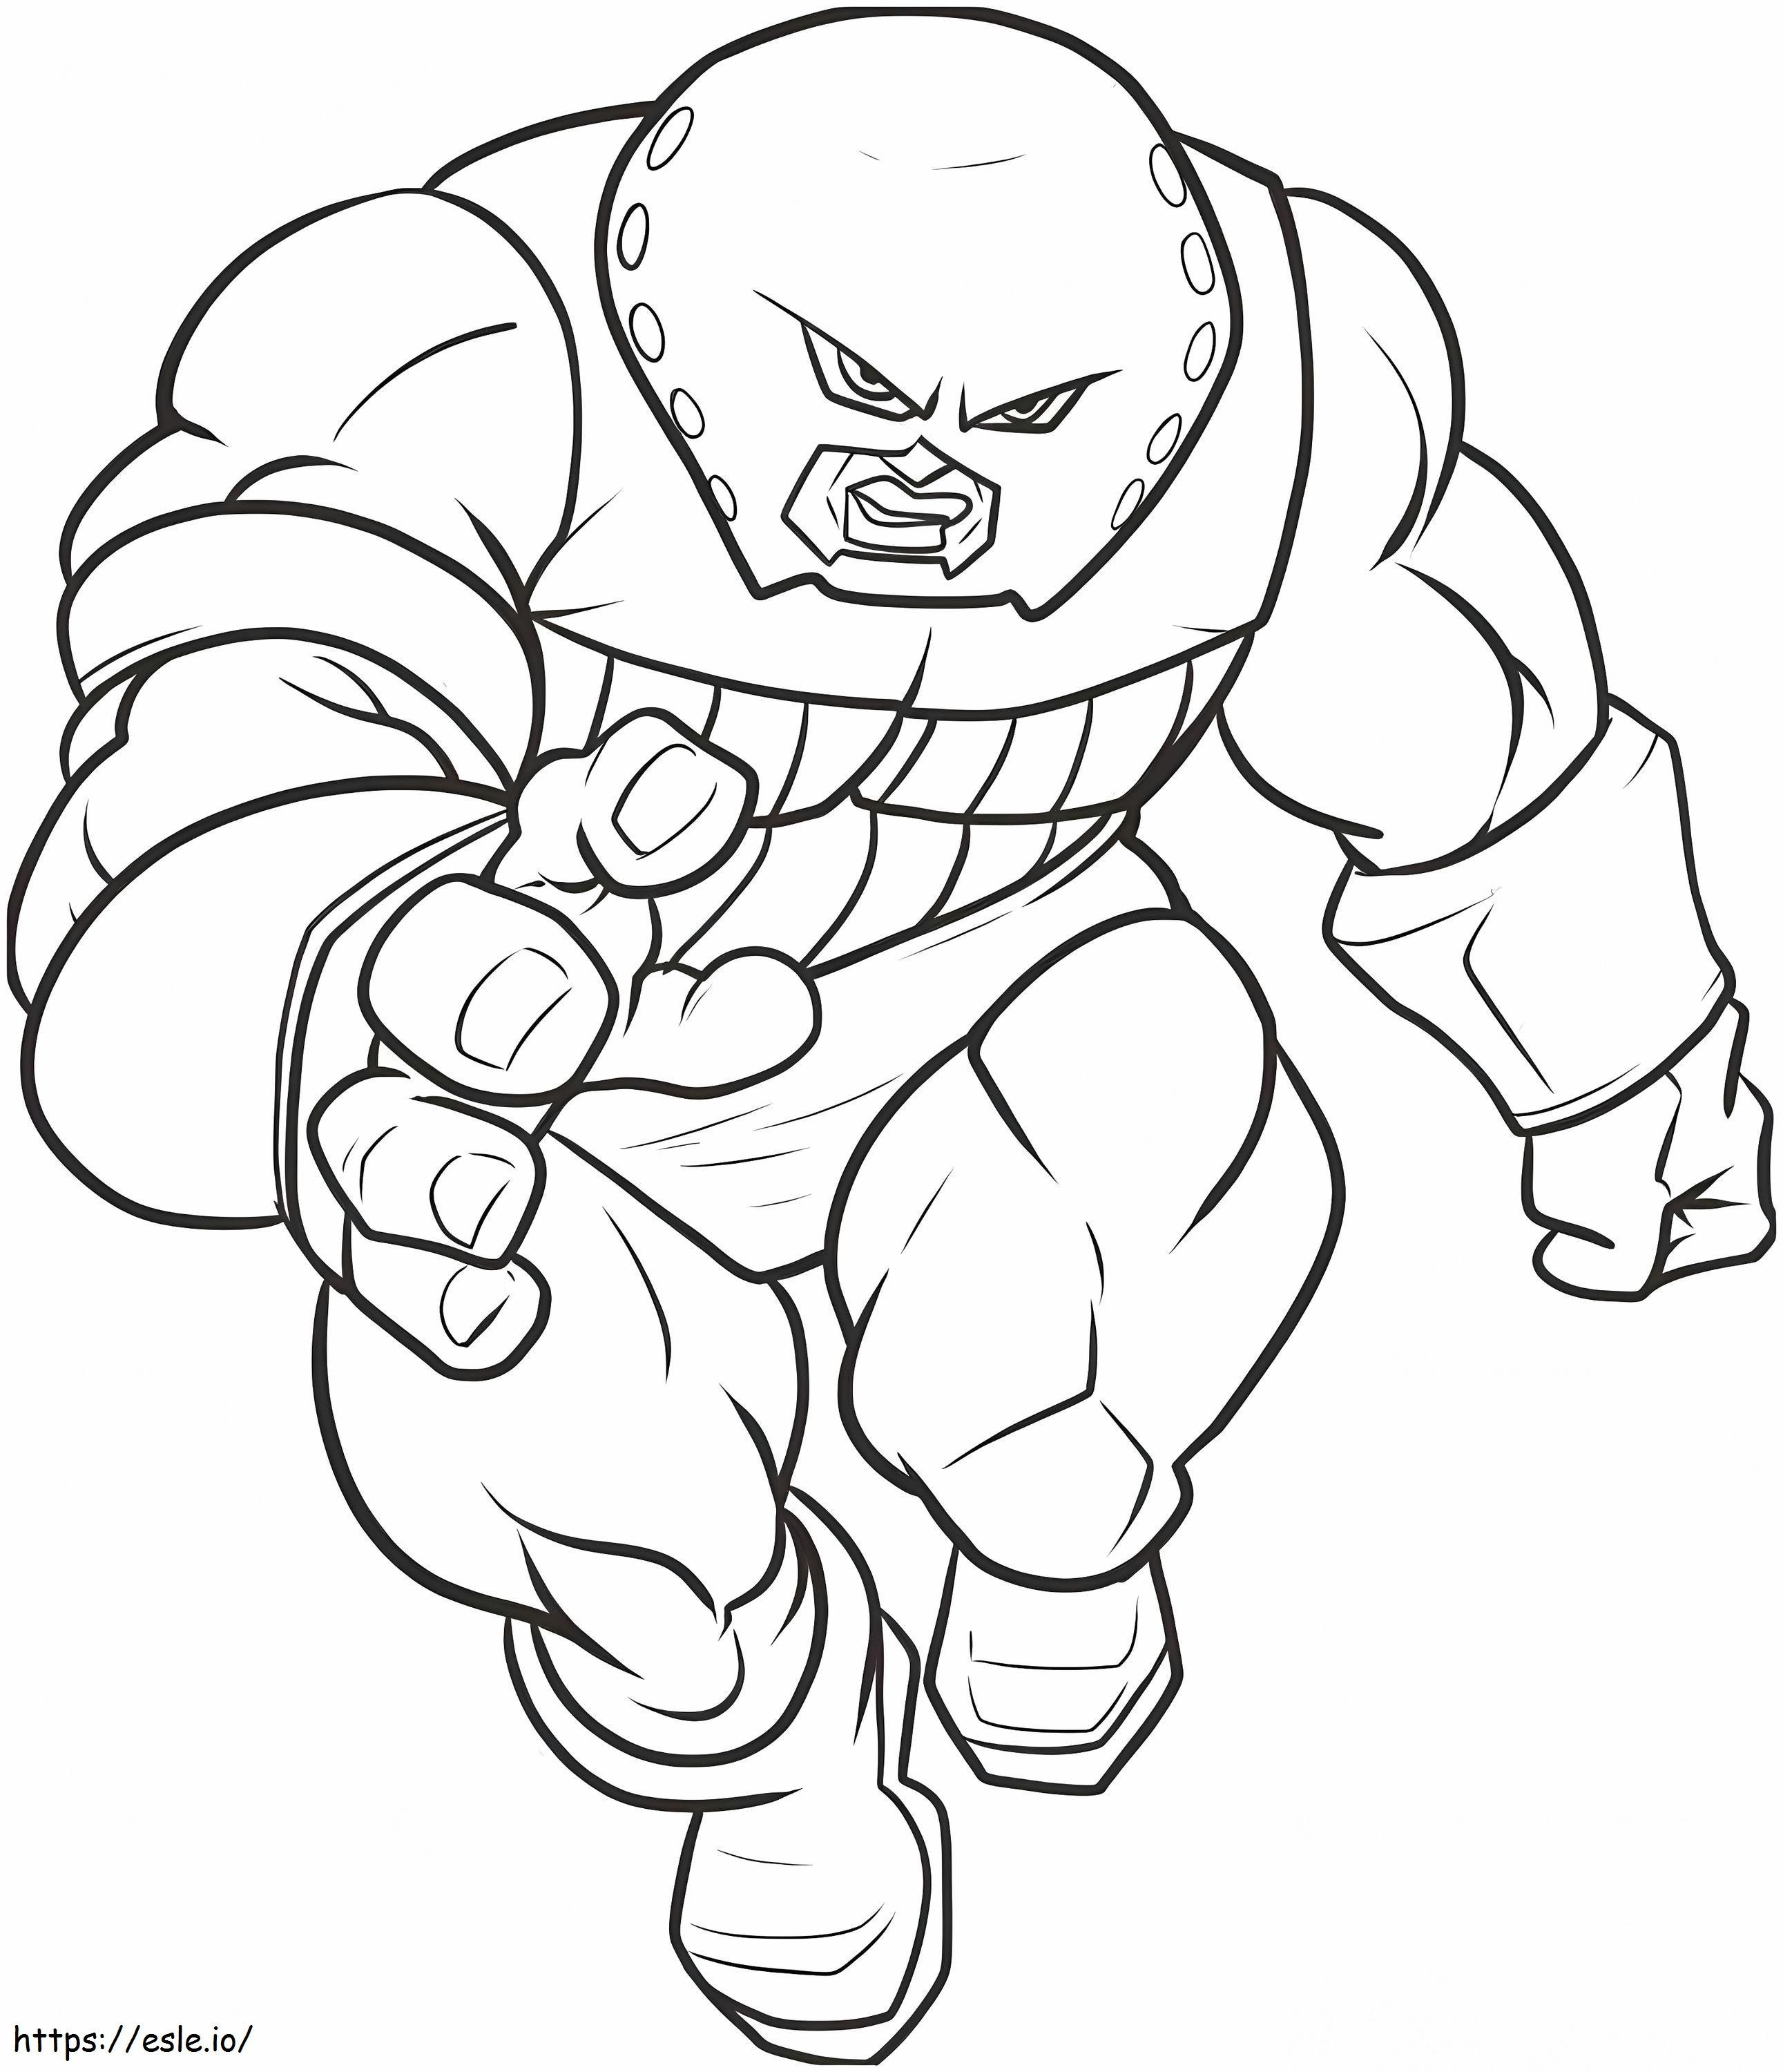 1544839187 Rysunek Kolorowanka Zadziwiające, jak narysować Juggernauta krok po kroku Marvel Postacie z rysunku Kolorowanka kolorowanka